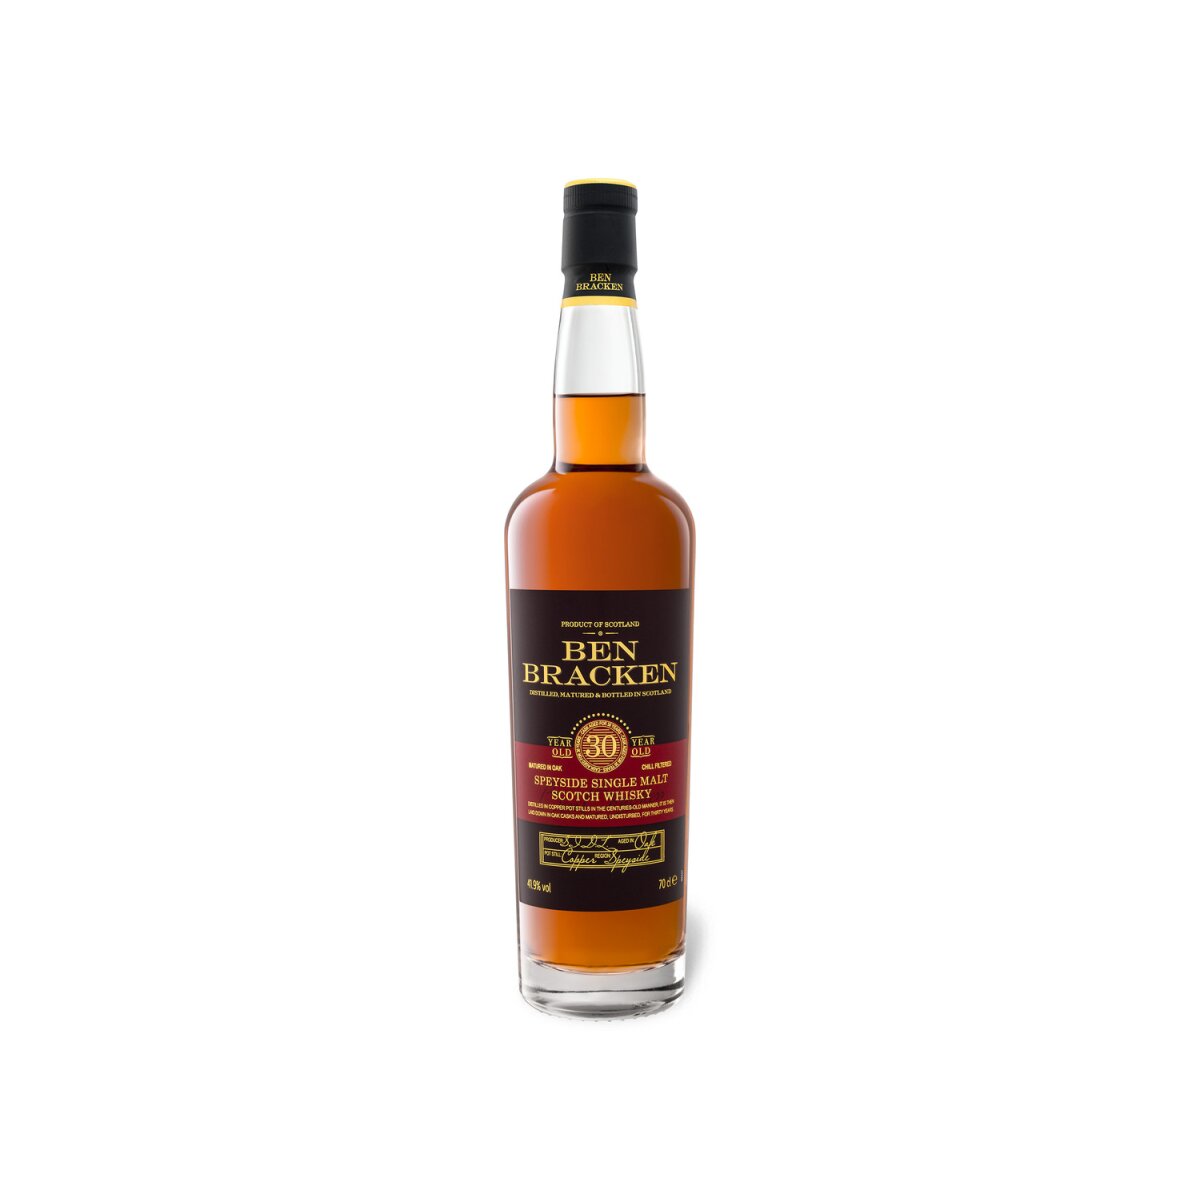 Ben Bracken Speyside Single Malt Scotch Whisky 30 Jahre mit Geschenkbox  41,9% Vol, 81,99 €